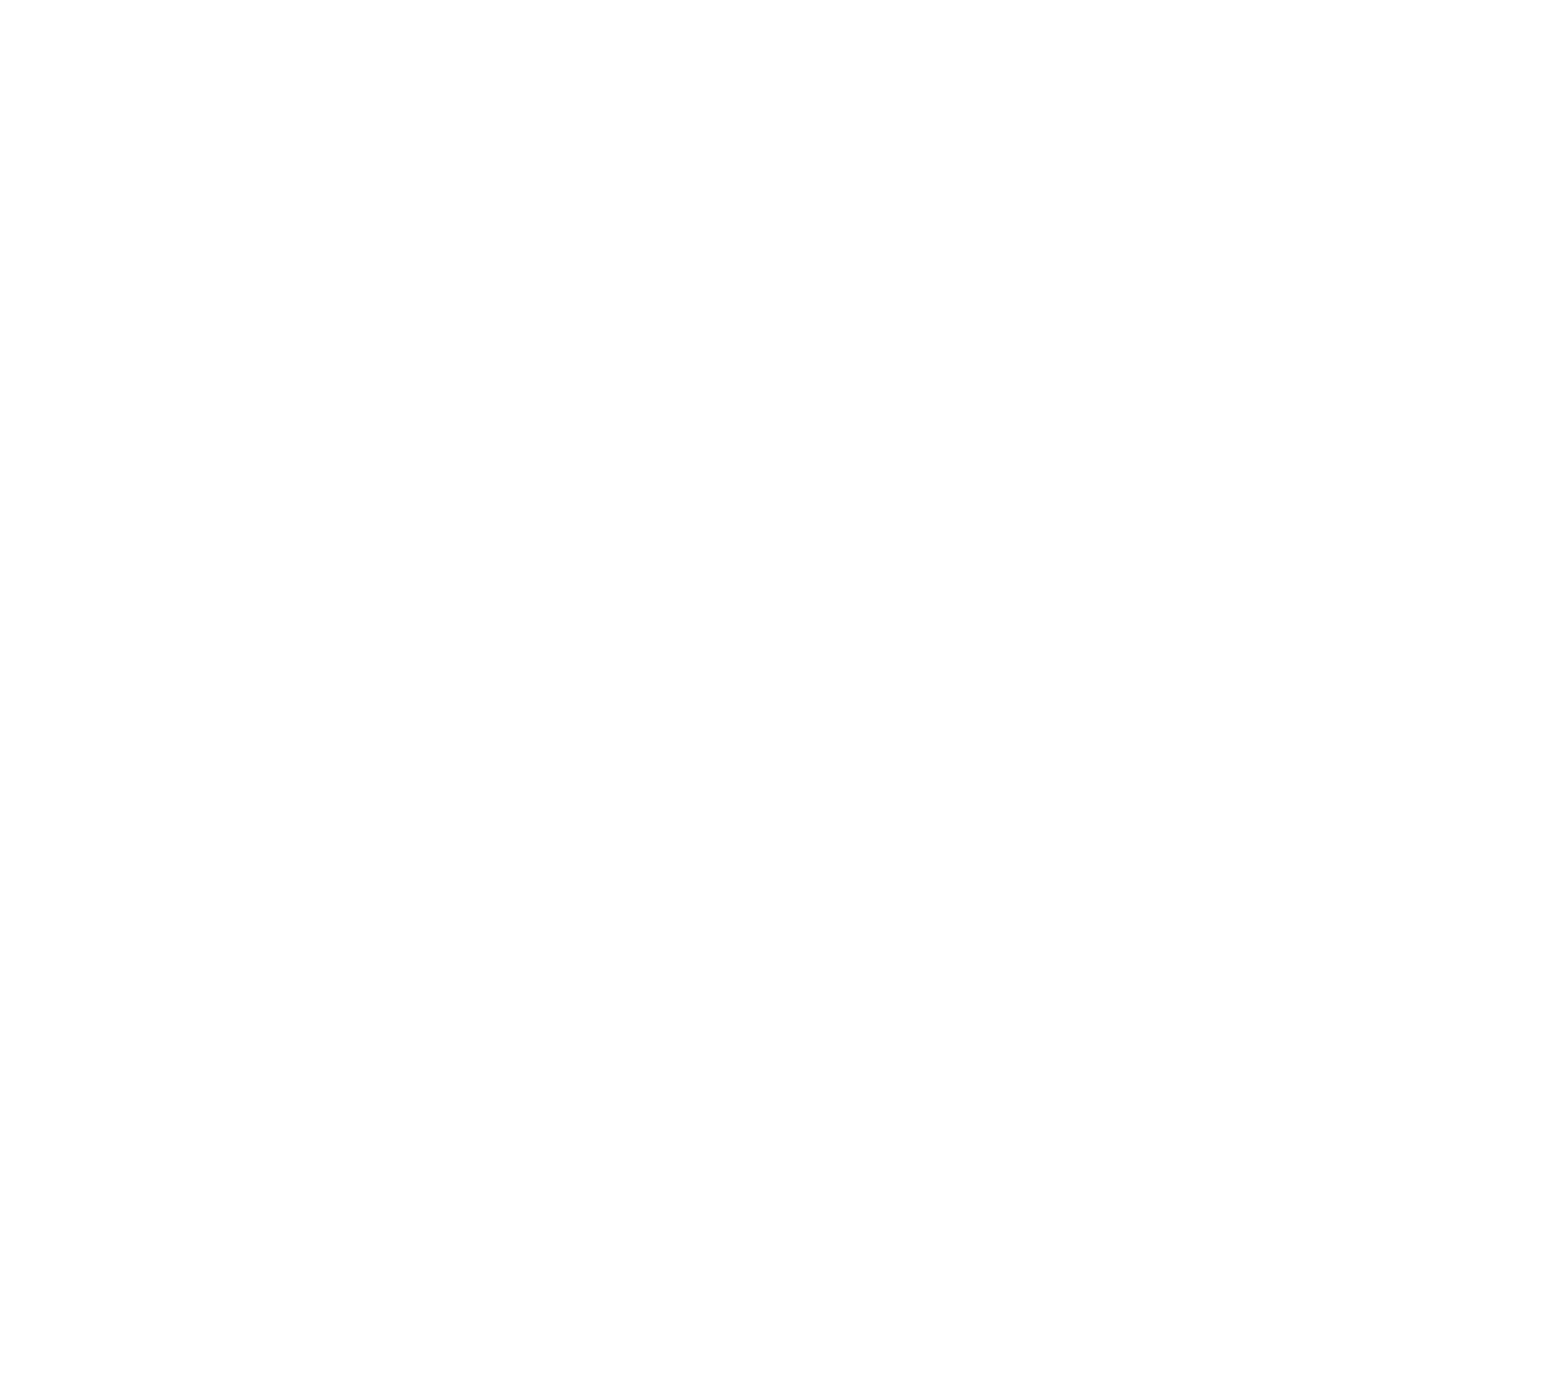 Dril-Quip logo grand pour les fonds sombres (PNG transparent)